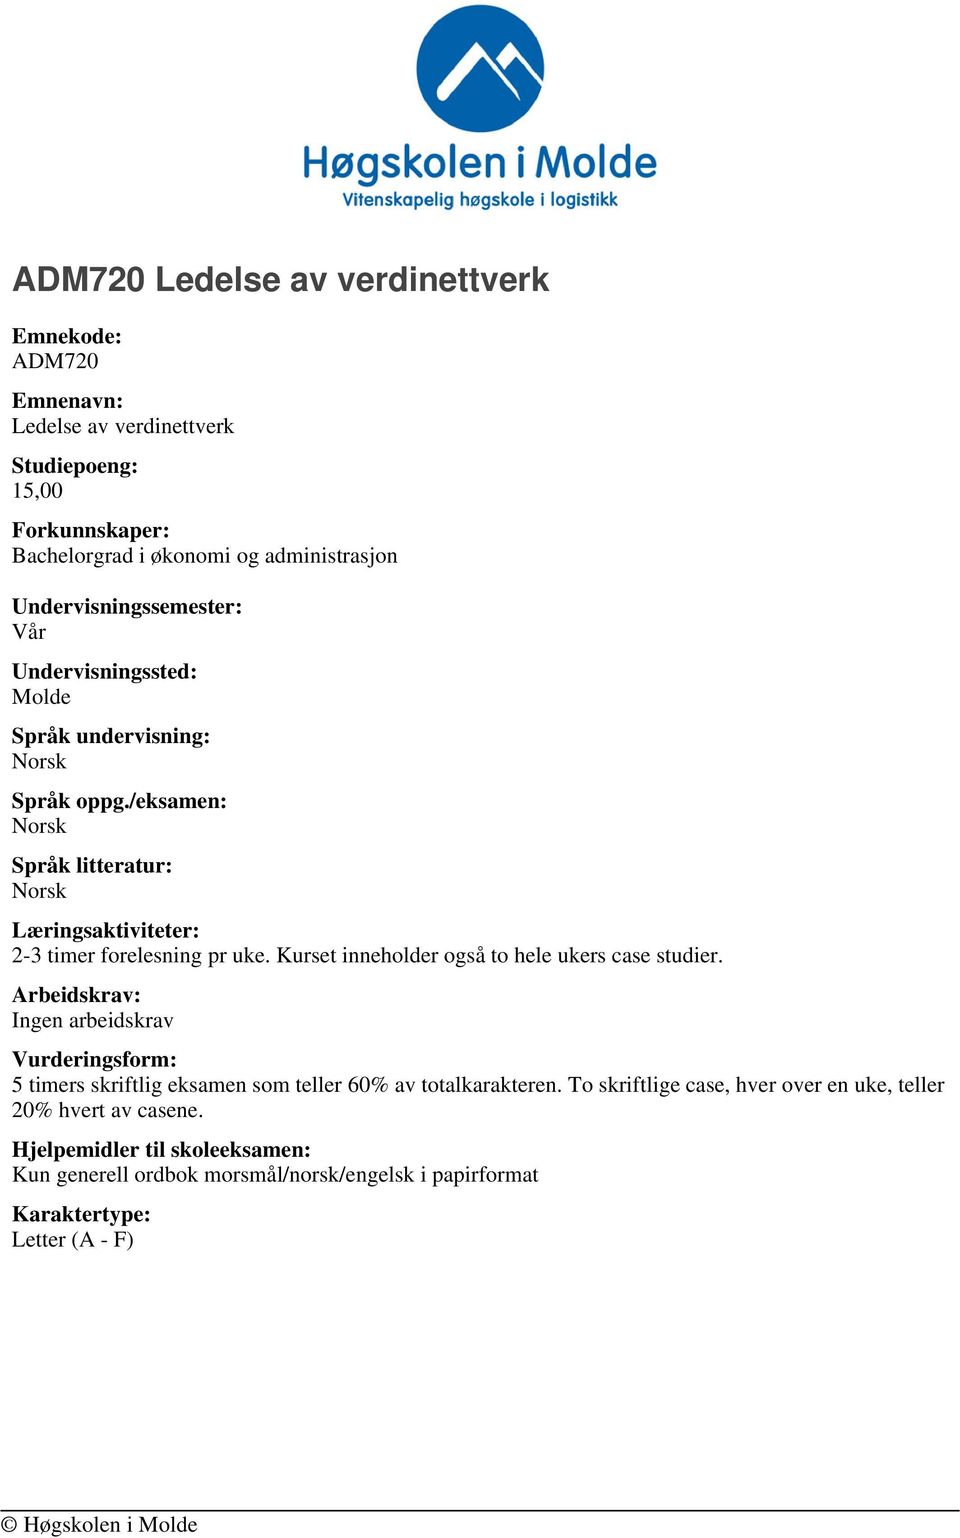 /eksamen: Norsk Språk litteratur: Norsk Læringsaktiviteter: 2-3 timer forelesning pr uke. Kurset inneholder også to hele ukers case studier.